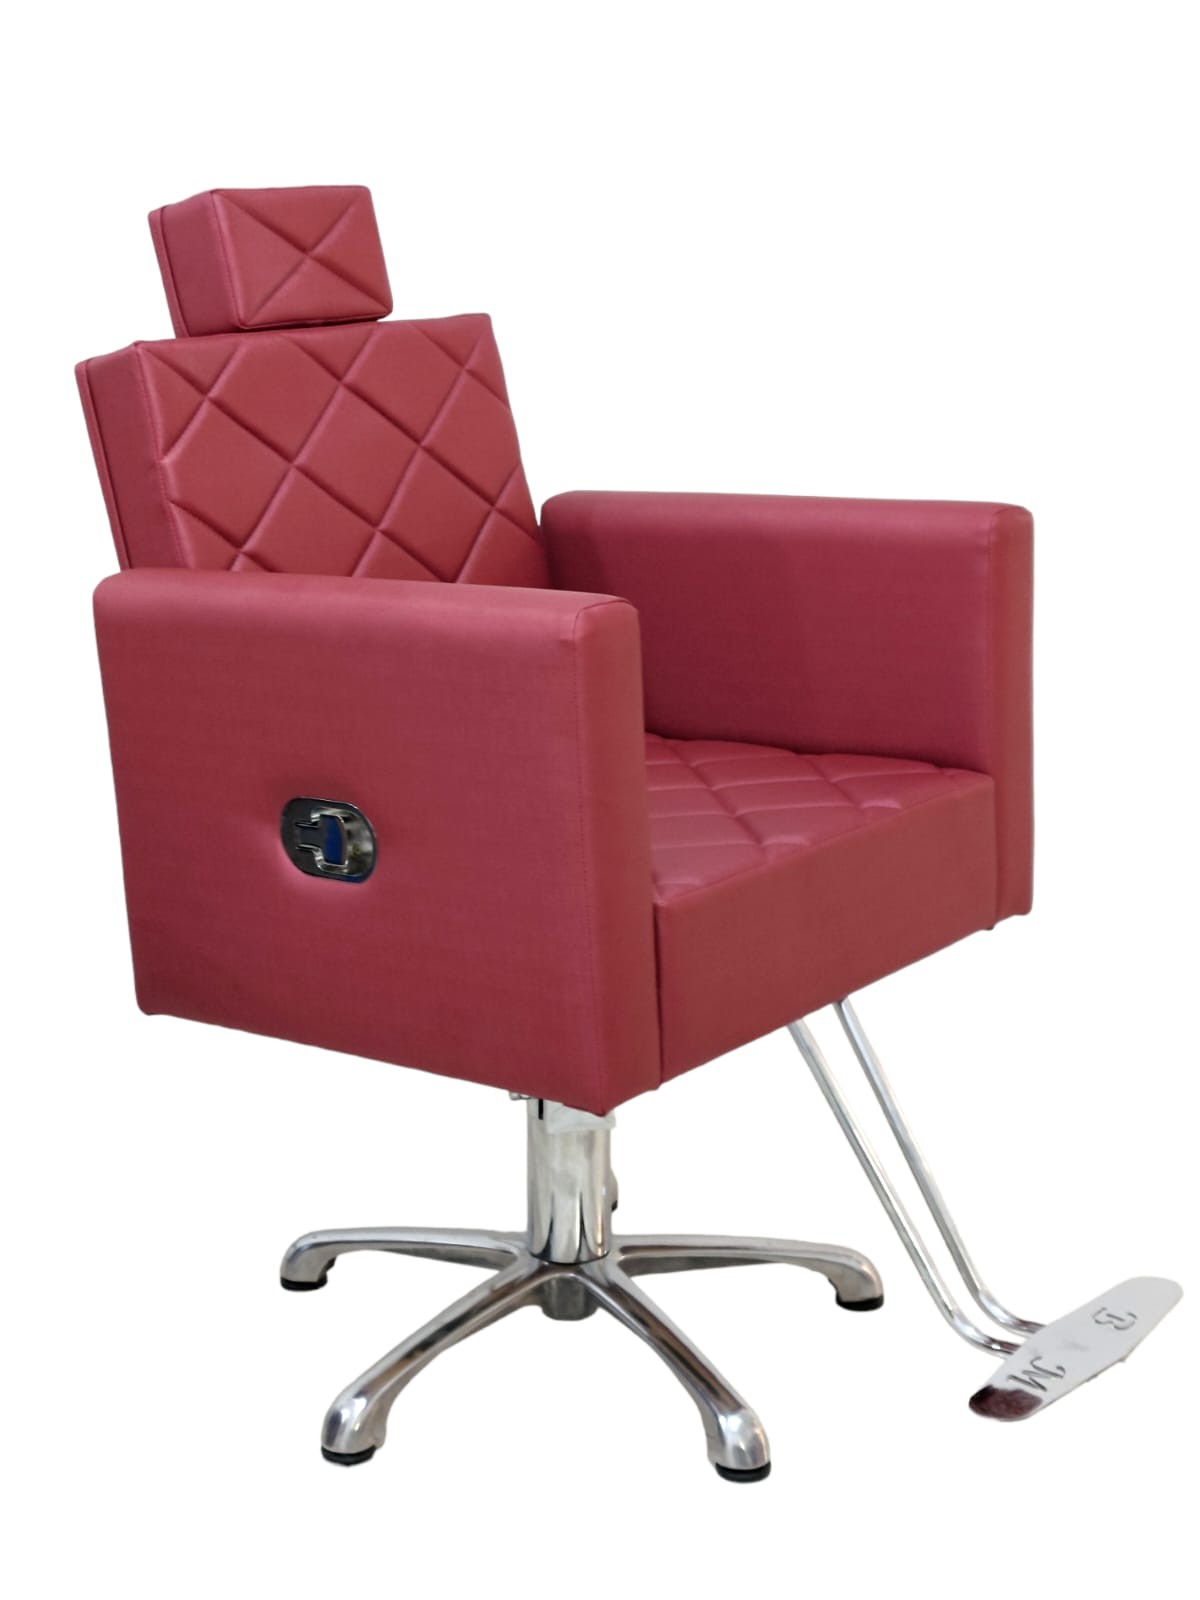 Cadeira p/ barbearia hidraulica reclinavel, barbeiro, cabeleireiro